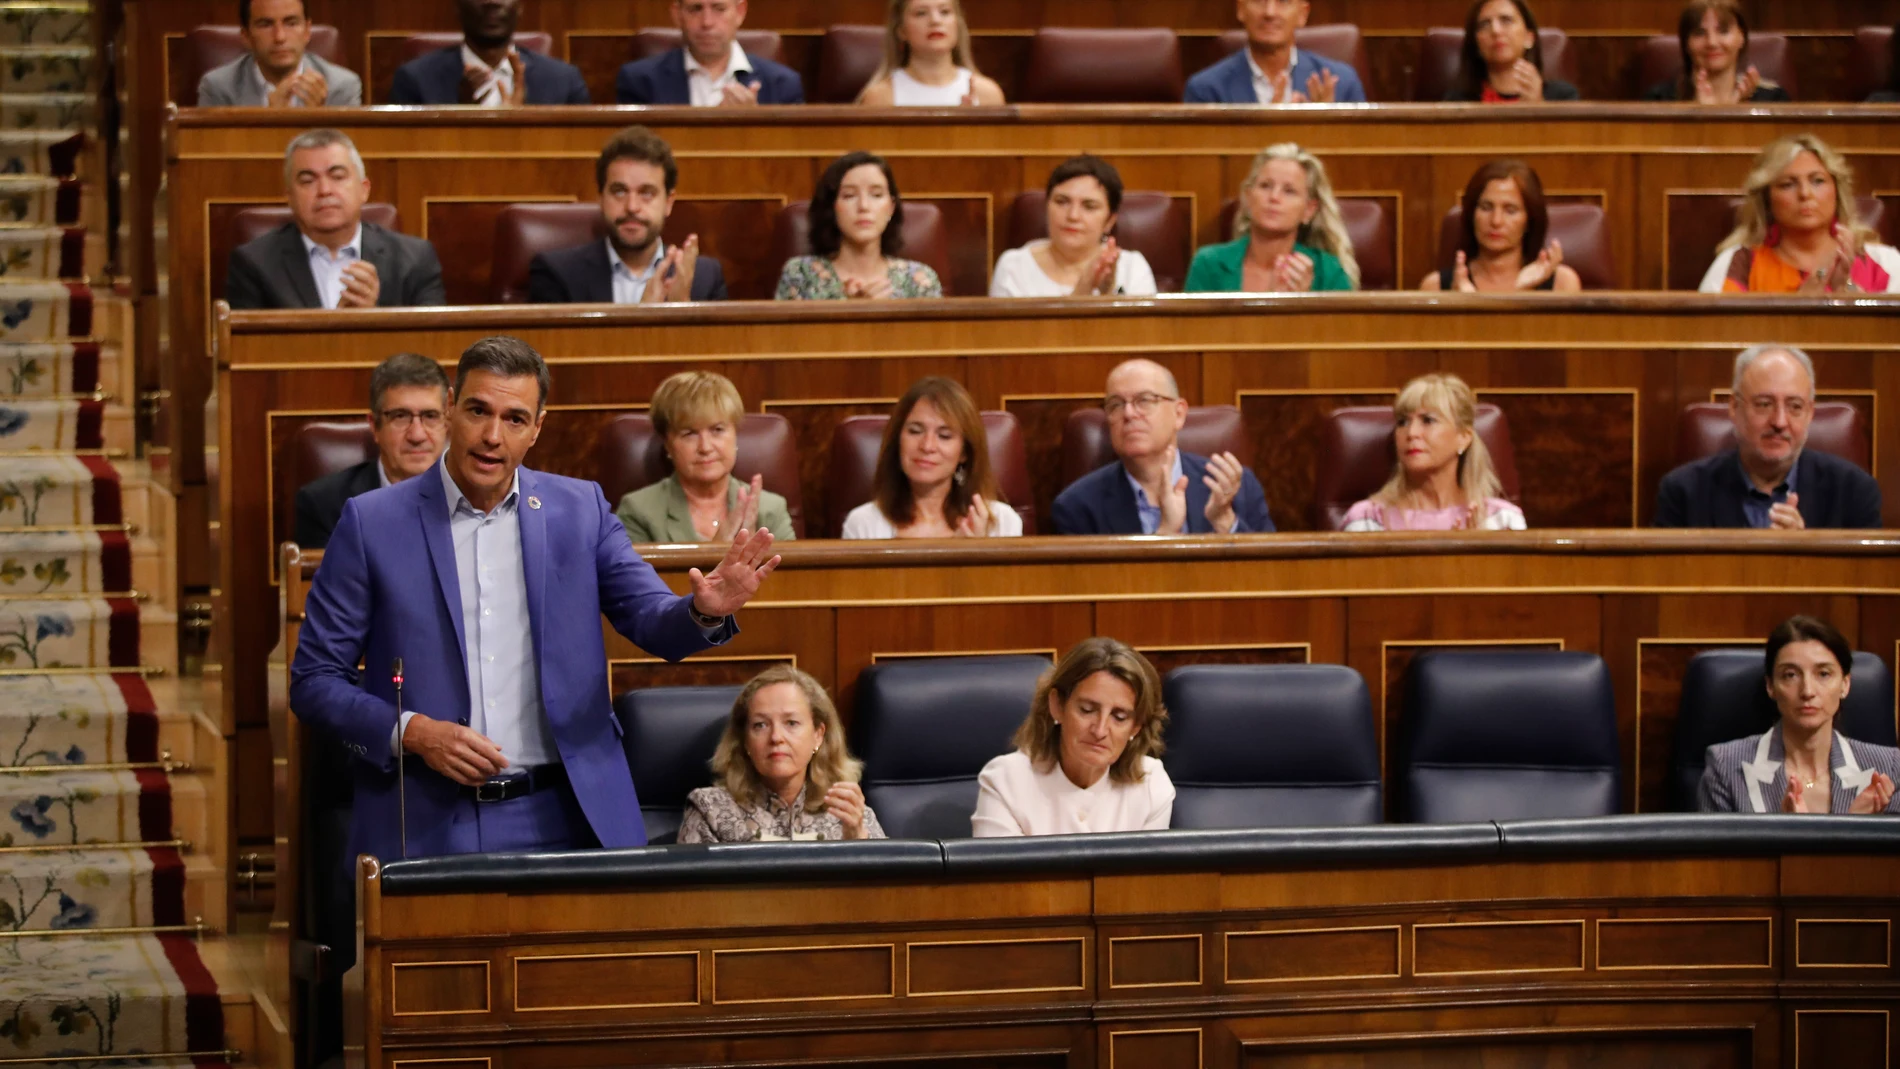 El presidente del Gobierno, Pedro Sánchez, recibe la ovación de la bancada socialista durante la sesión de control al gobierno celebrada este miércoles en el Congreso.